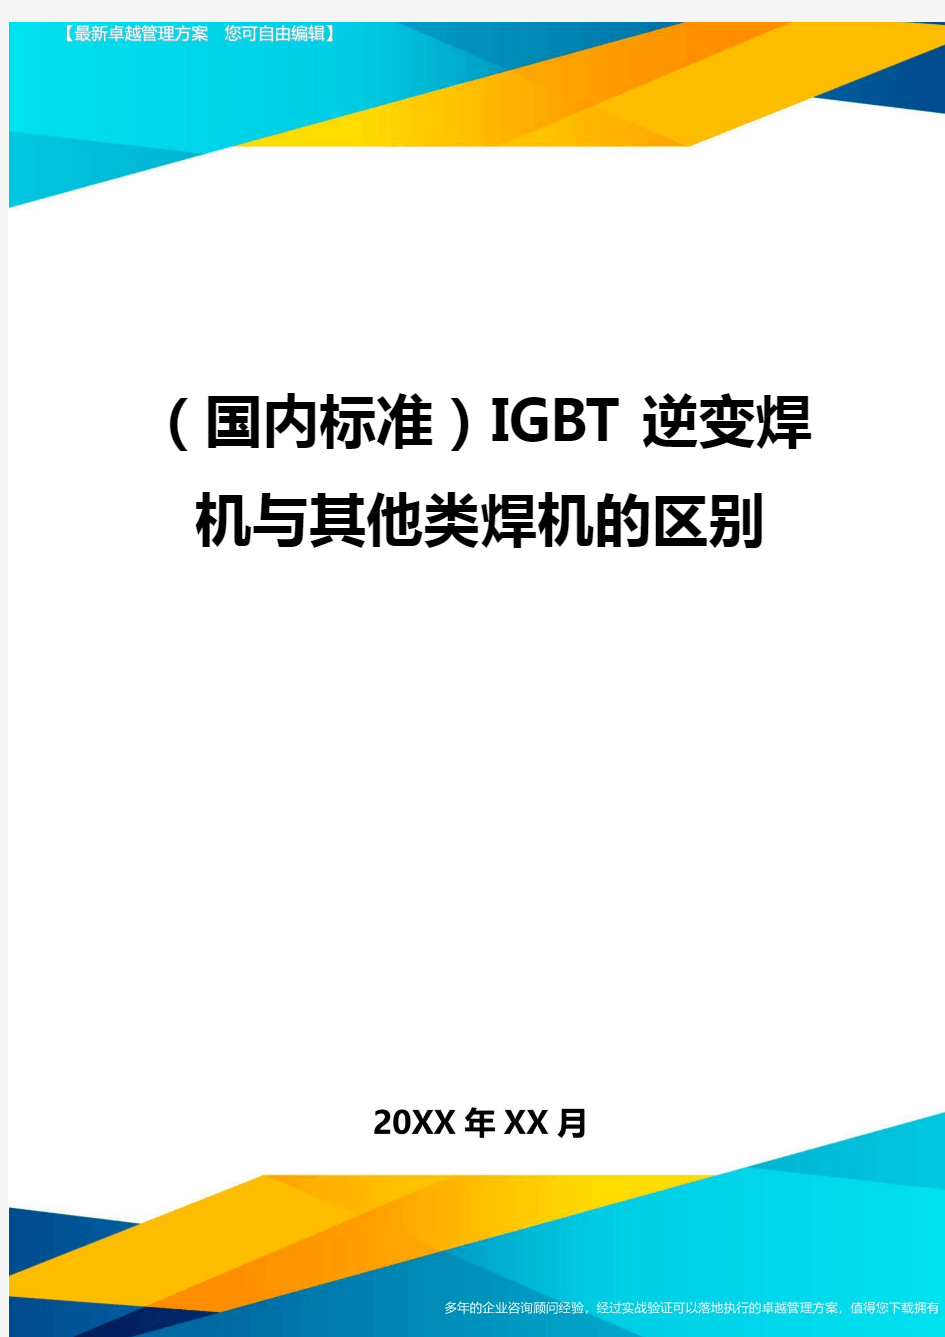 (国内标准)IGBT逆变焊机与其他类焊机的区别